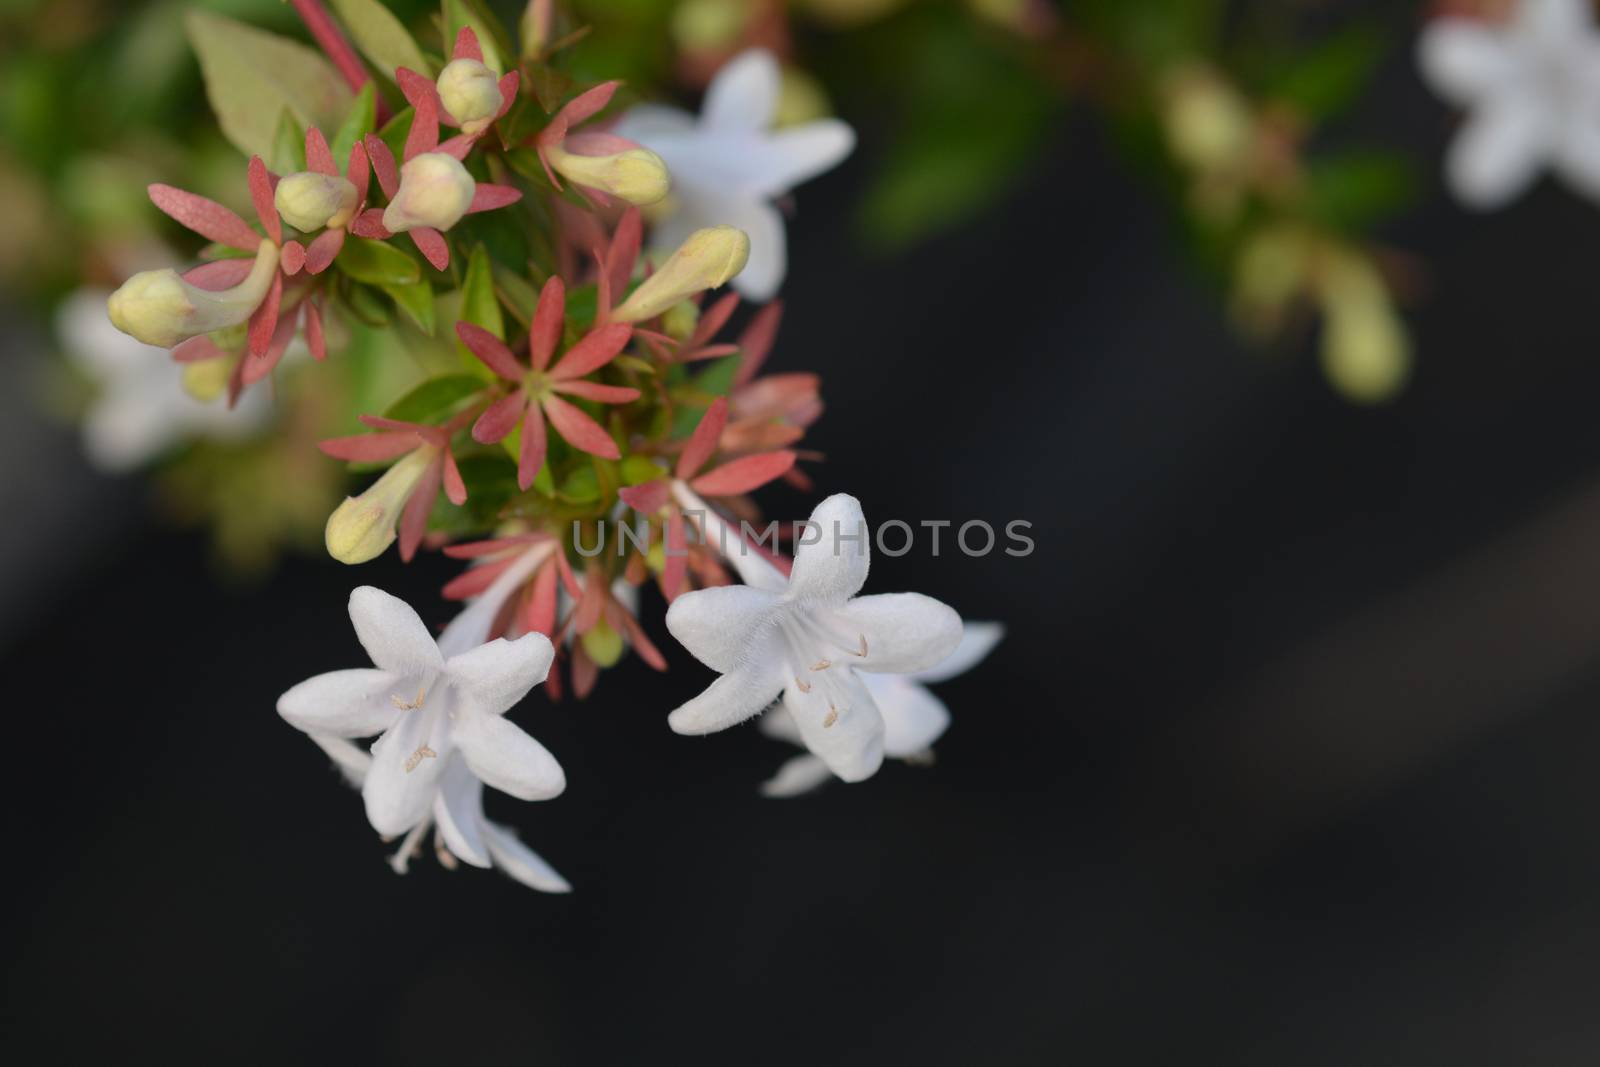 Glossy abelia - Latin name - Abelia x grandiflora